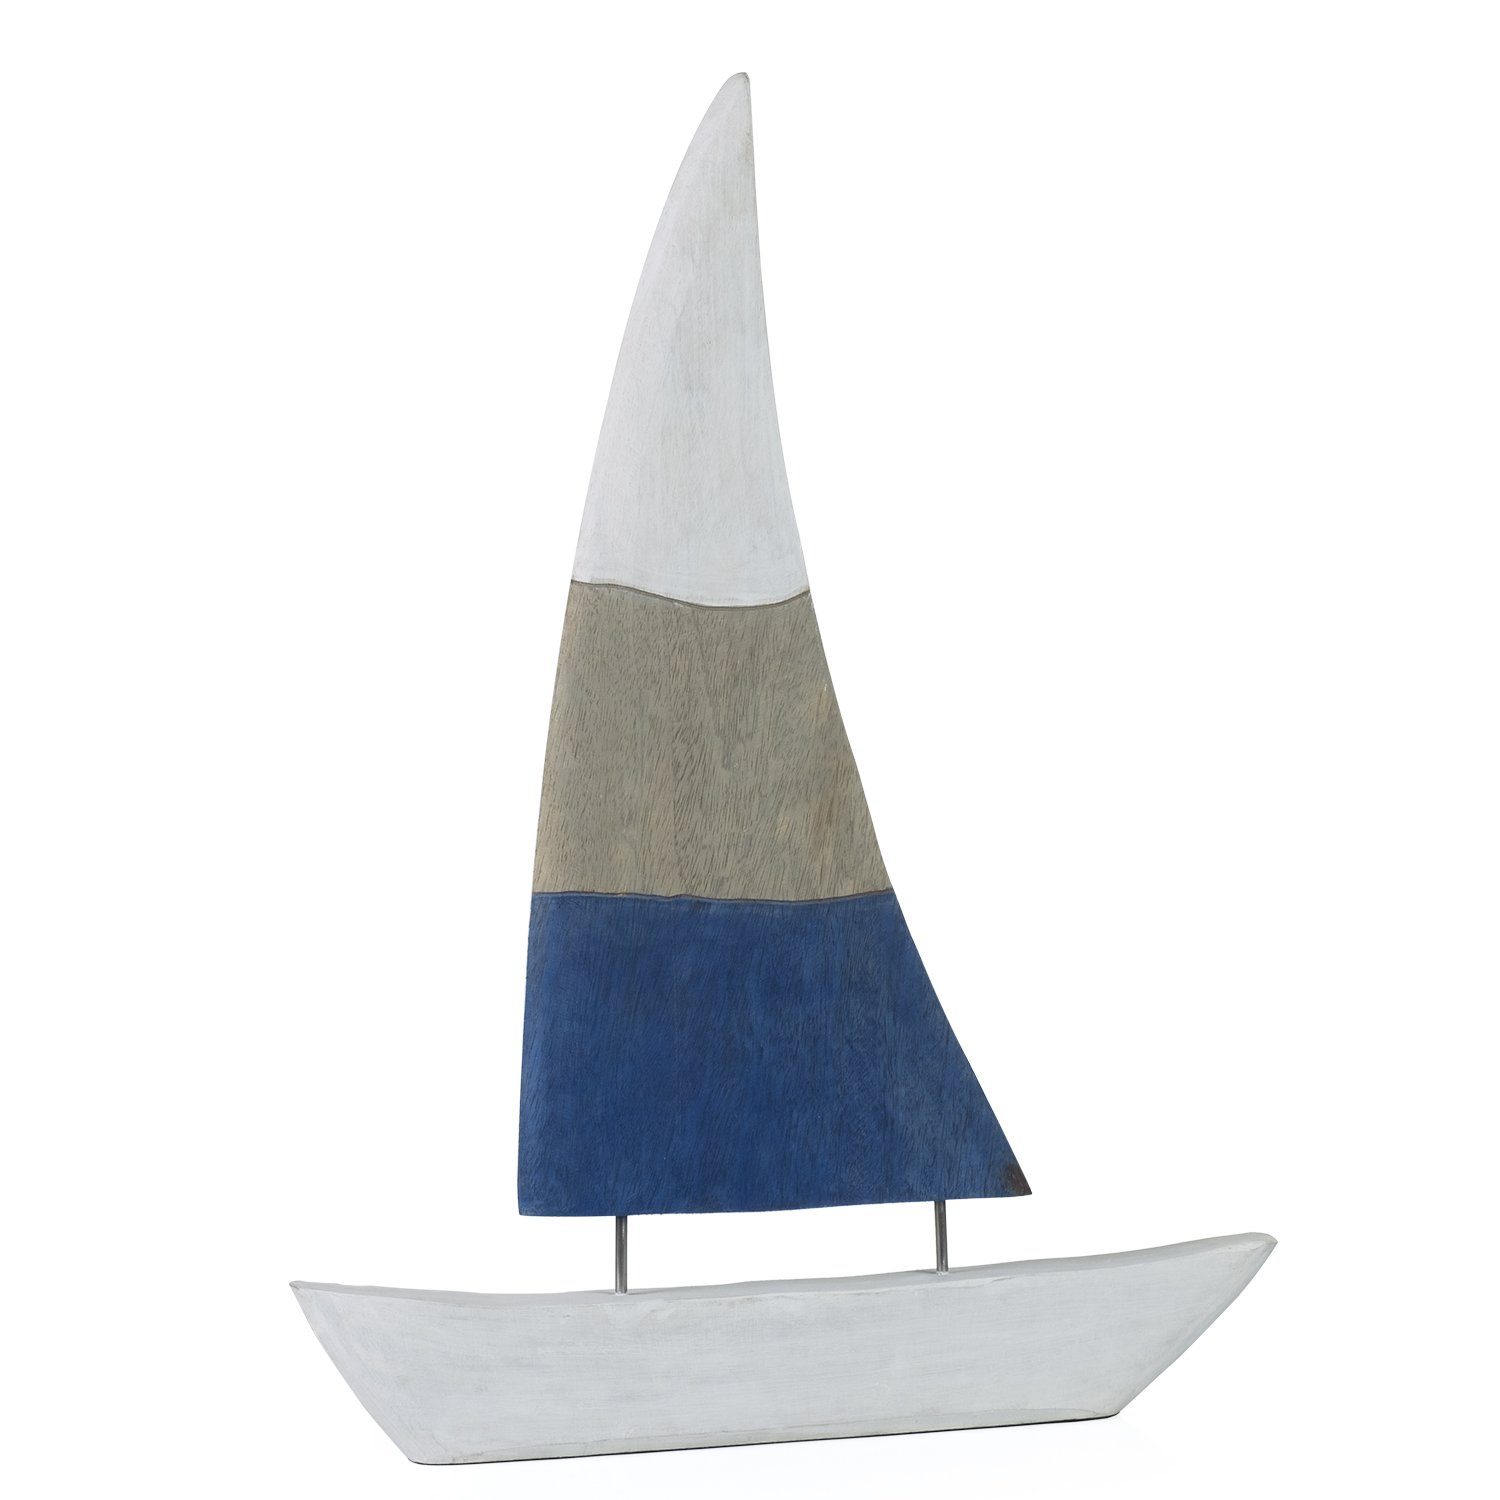 Moritz Skulptur Deko Segelboot Boot 50x69x5cm, Dekoobjekt Holz, Tischdeko, Fensterdeko, Wanddeko, Holzdeko